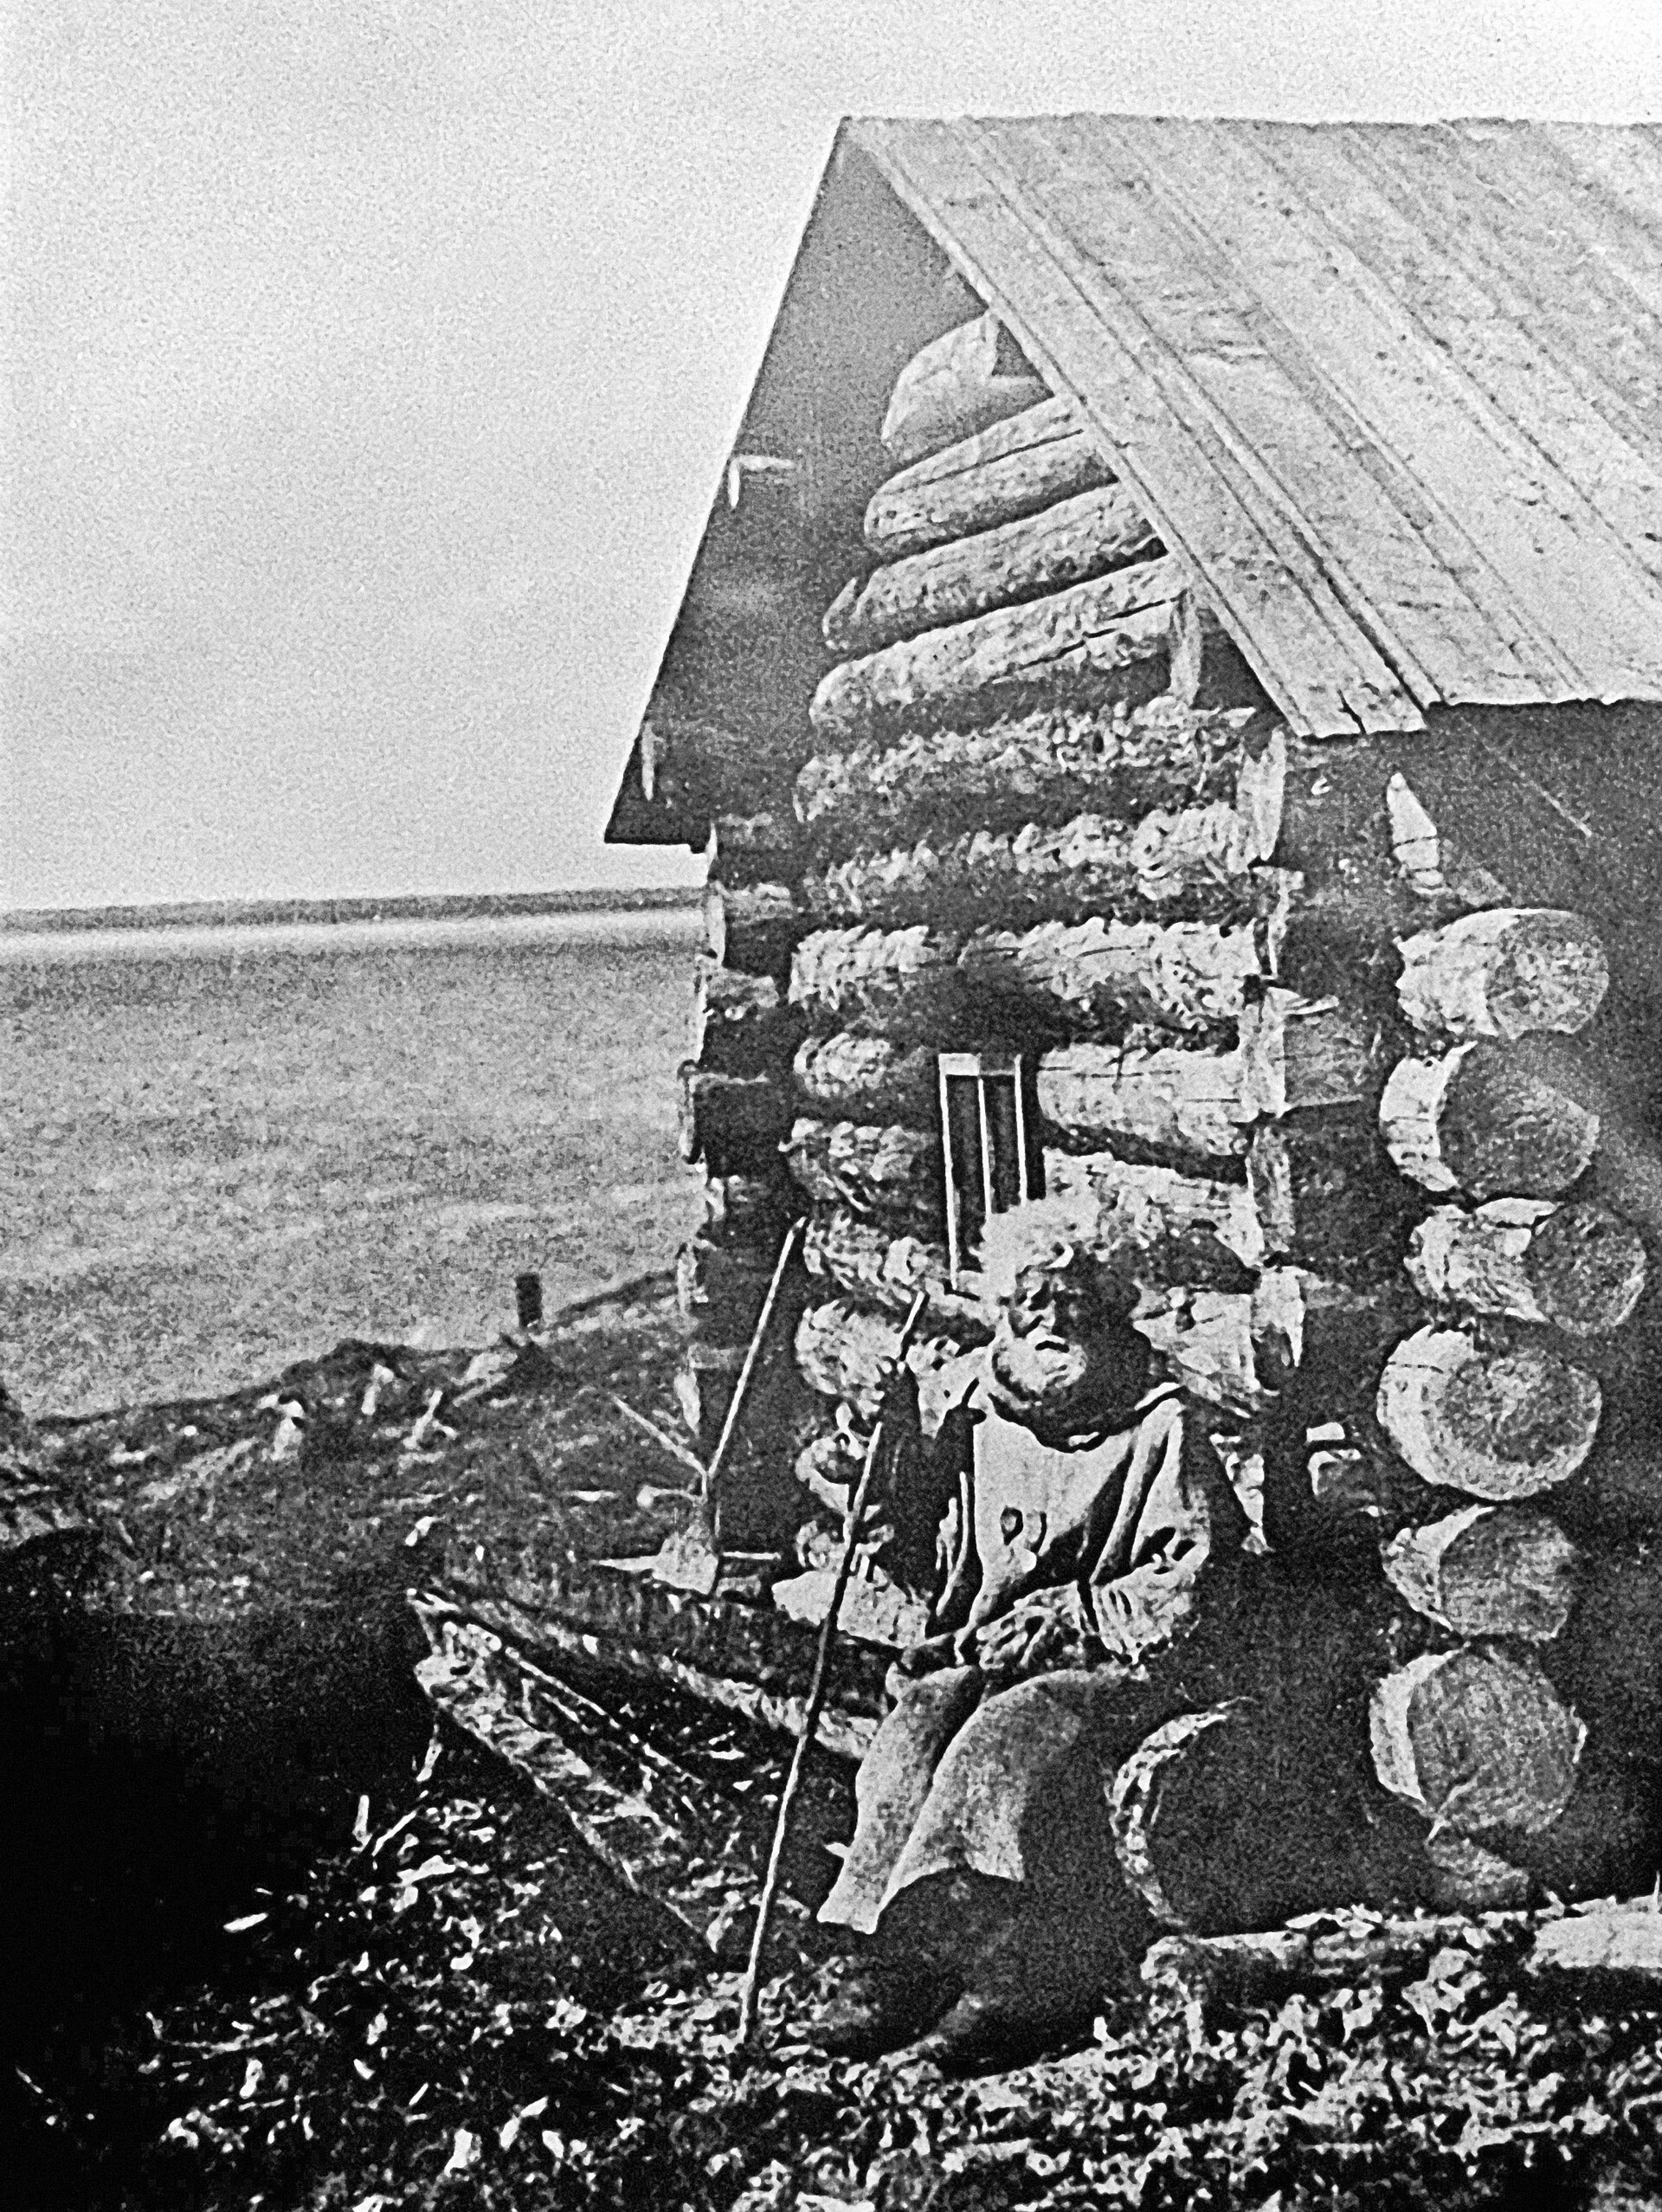 Uno de los primeros residentes de Múrmansk, el pescador Semión Kórzhev en su cabaña, 1910.